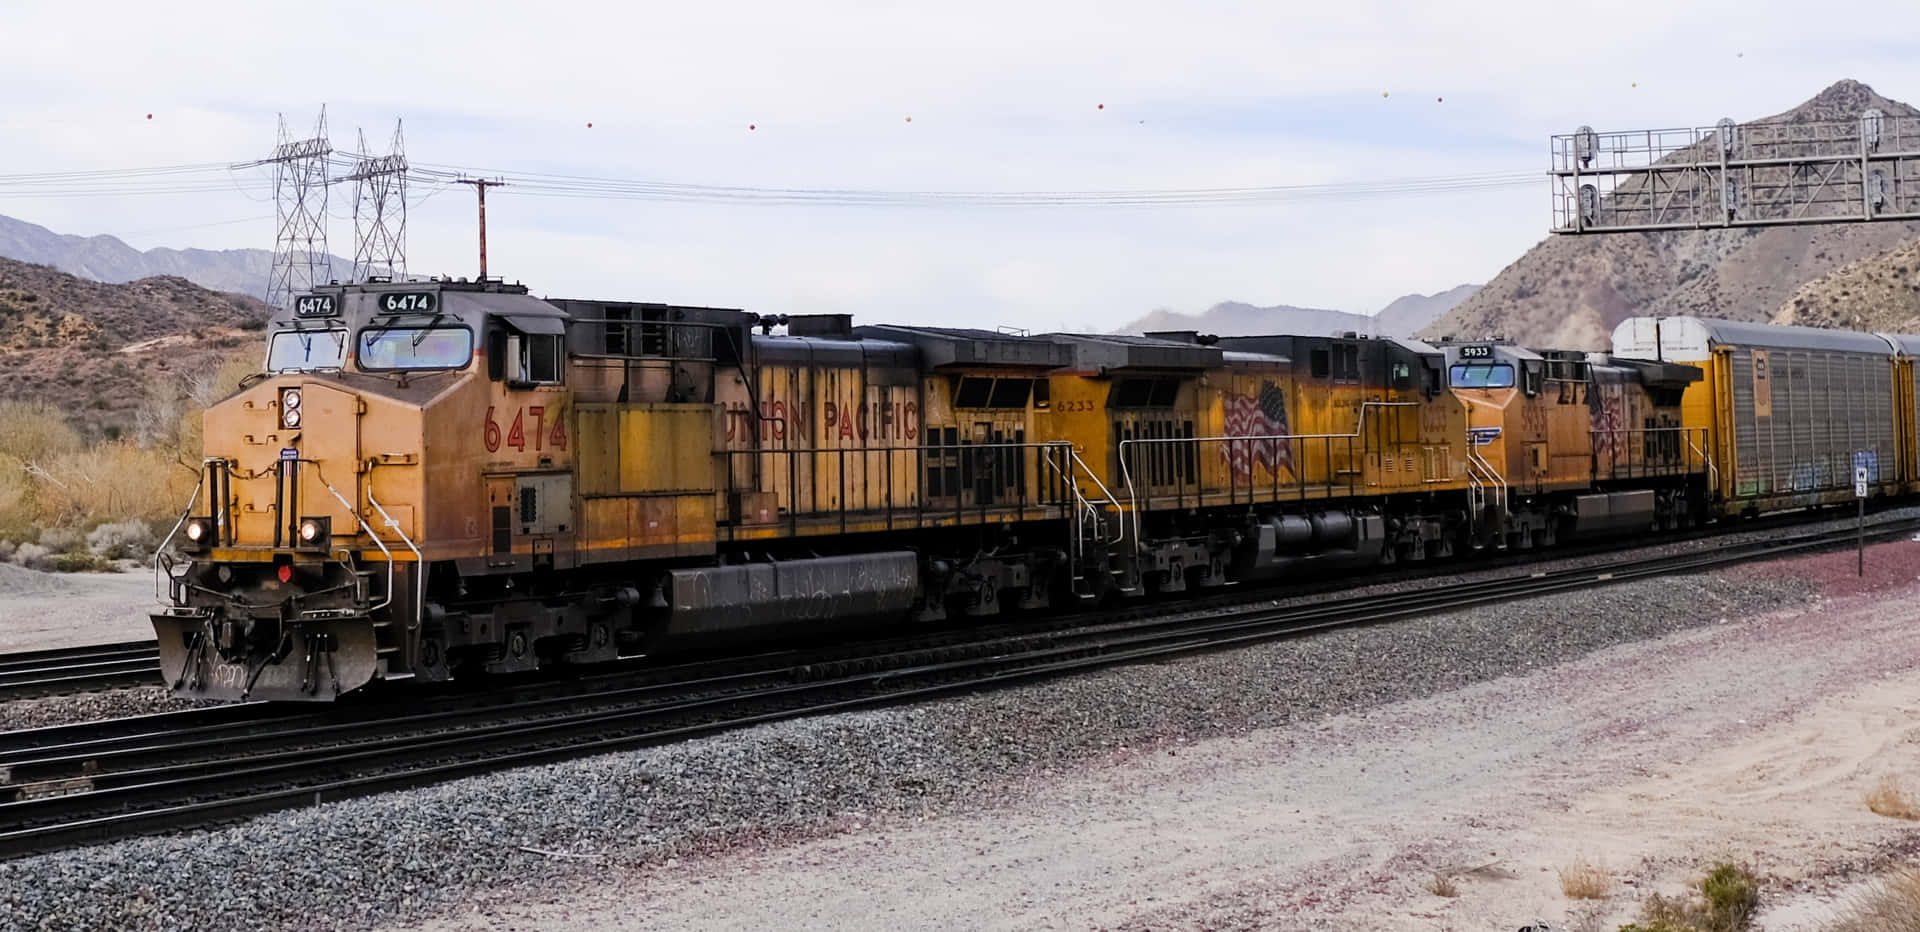 Union Pacific Railroad Picture